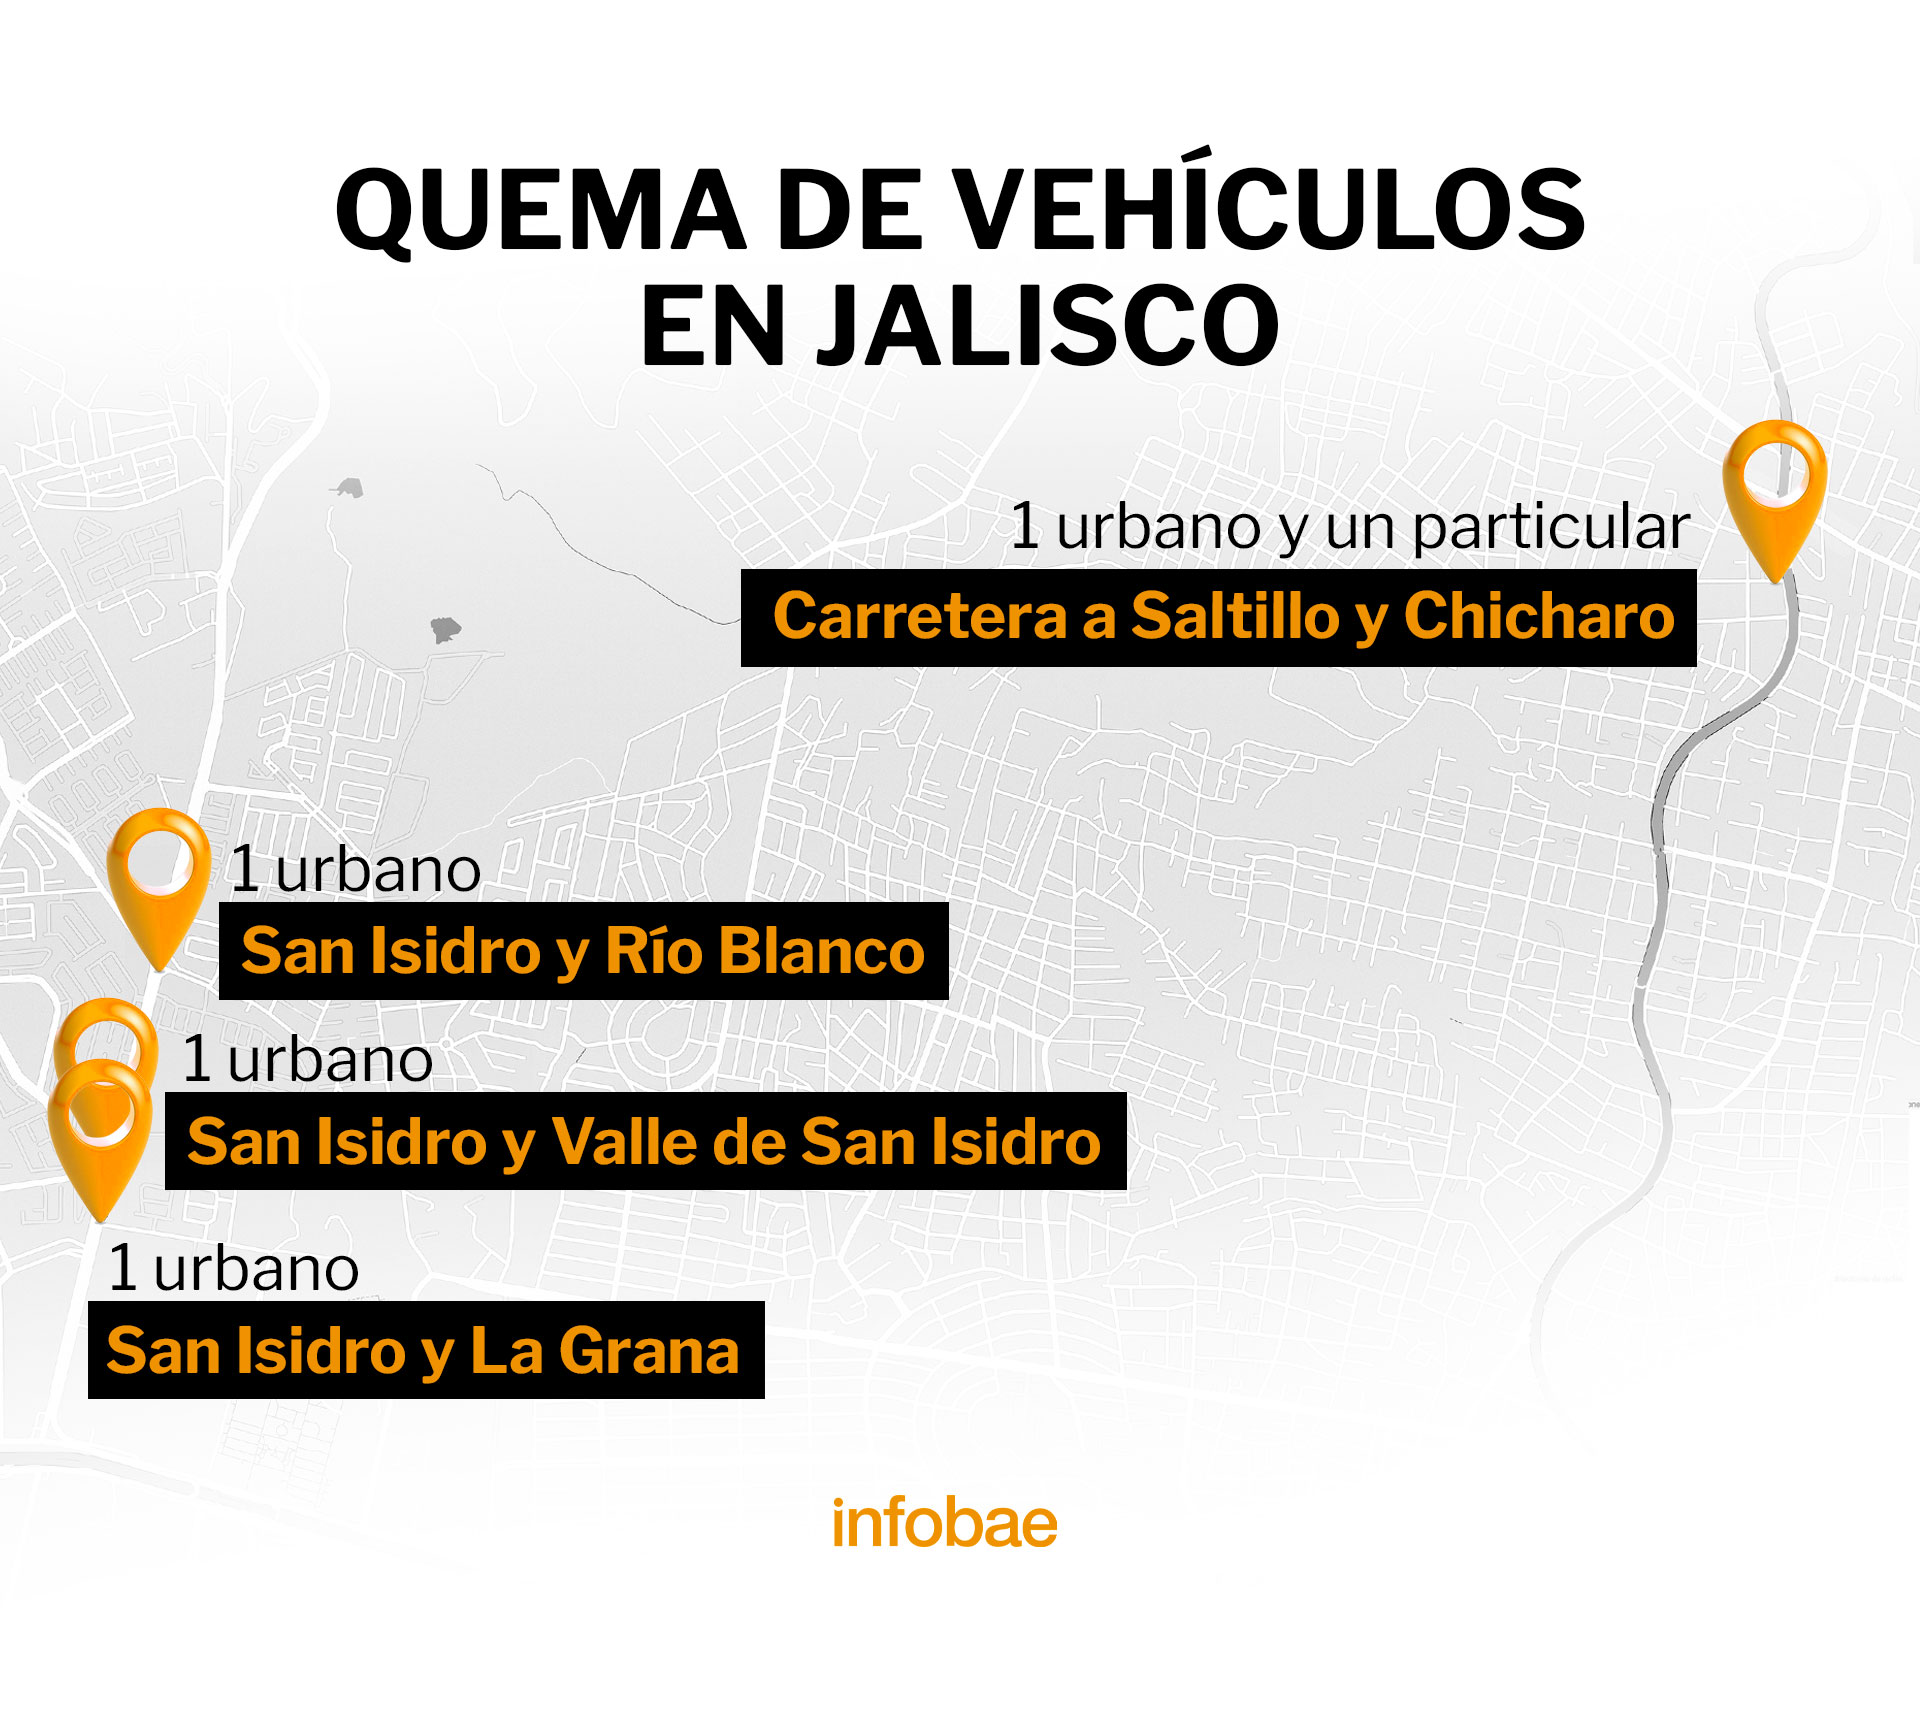 Narcobloqueos en Jalisco 9 de agosto
(Imagen: Infobae)